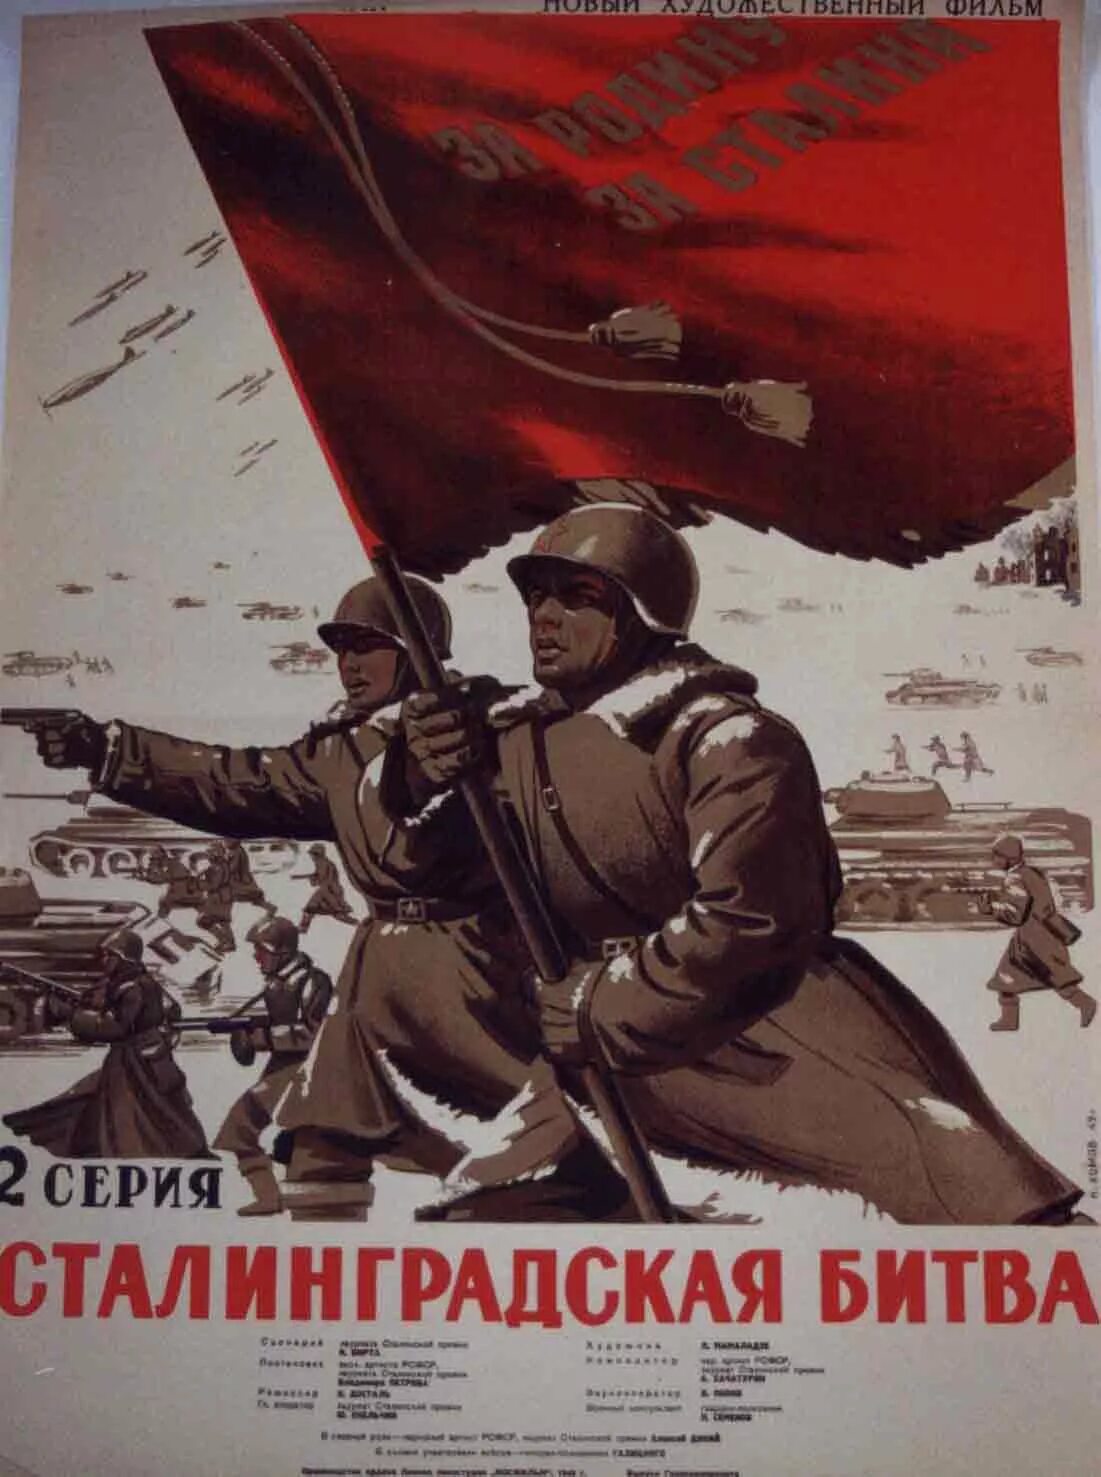 Битва которой посвящен плакат началась в. Сталинград плакат Великой Отечественной войны. Плакат победа в Сталинградской битве. Плакаты ВОВ Сталинградская битва. Военные плакаты Сталинград.